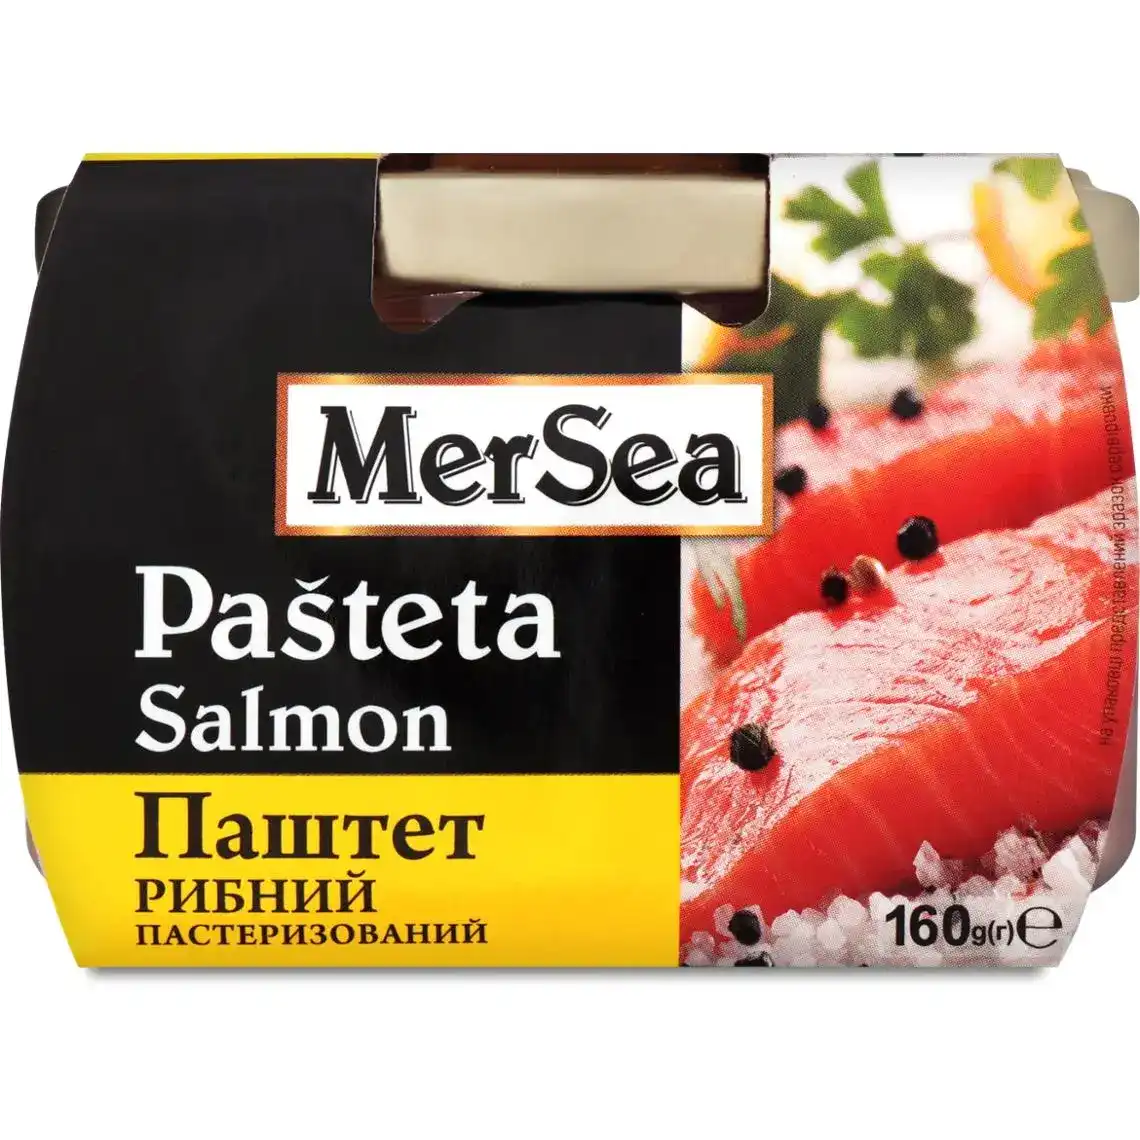 Паштет рибний MerSea Pasteta Salmon з лососем пастеризований 160 г